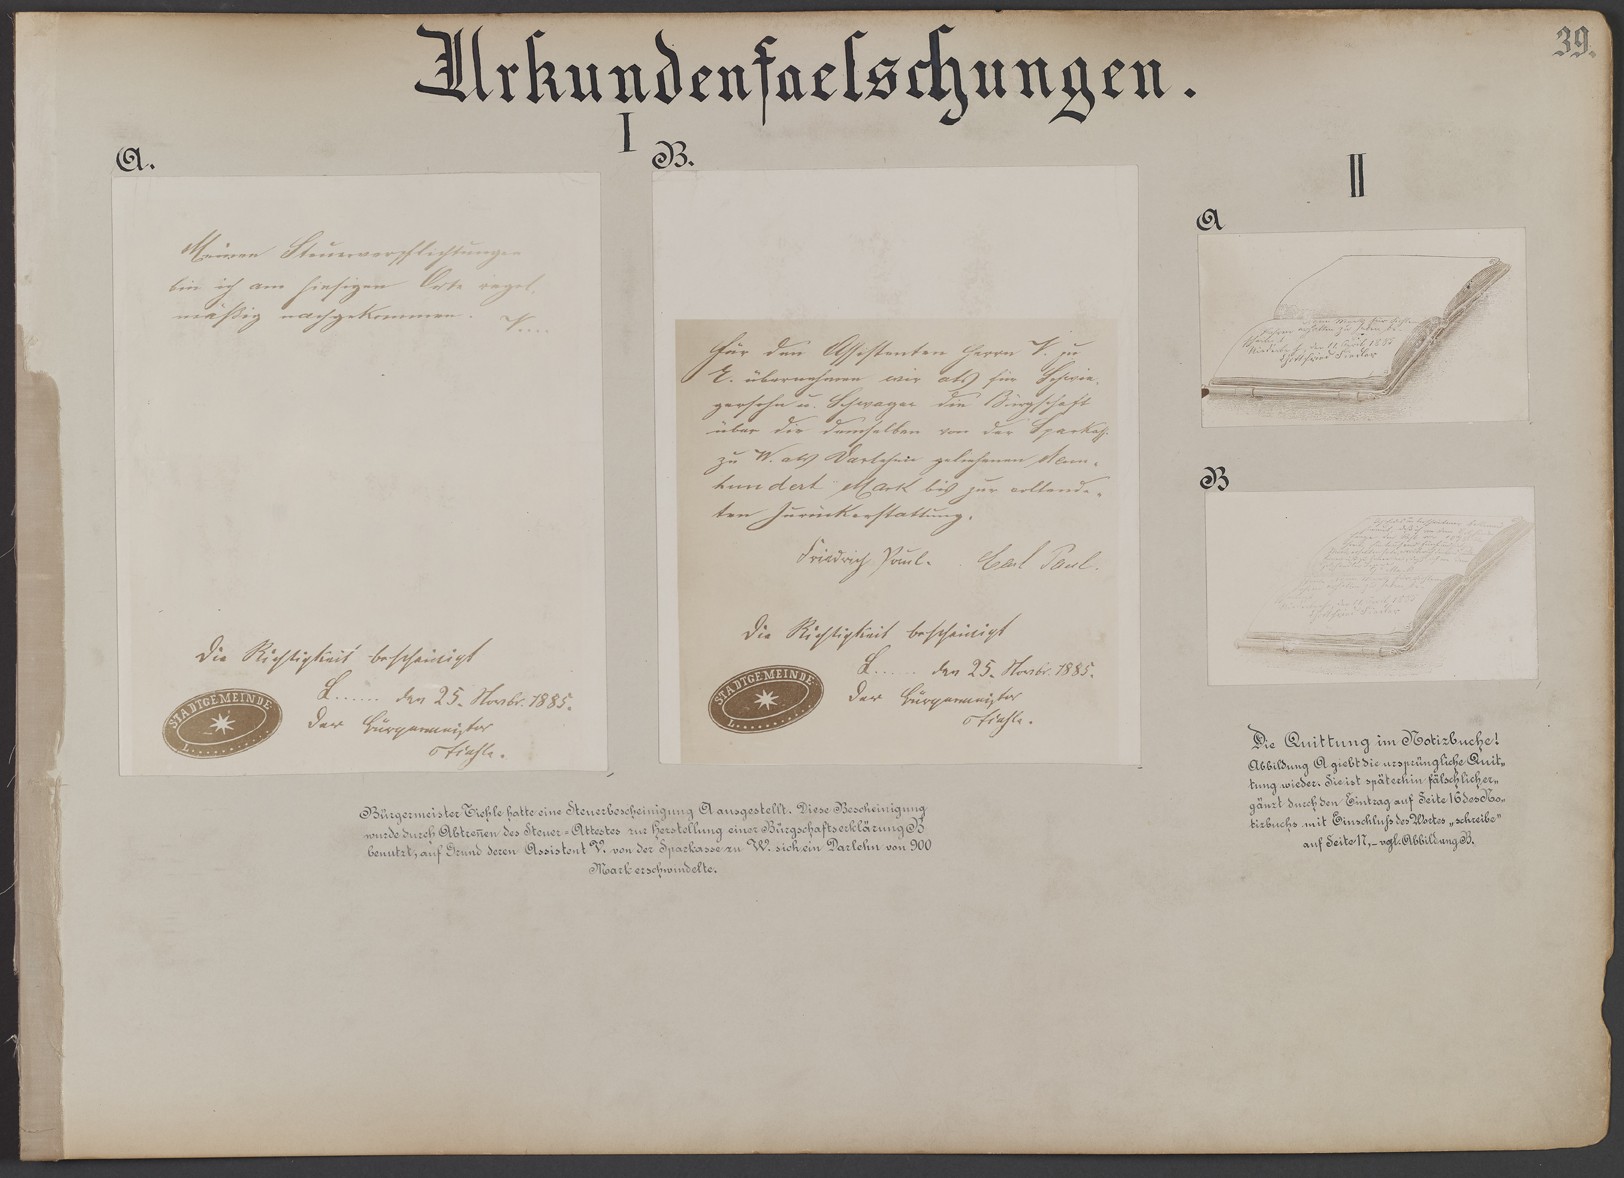 Lehrtafel "Urkundenfälschungen" am Beispiel von Briefen und Dokumenten (Fallbeispiele I bis VII) (Polizeidirektion Dresden RR-F)